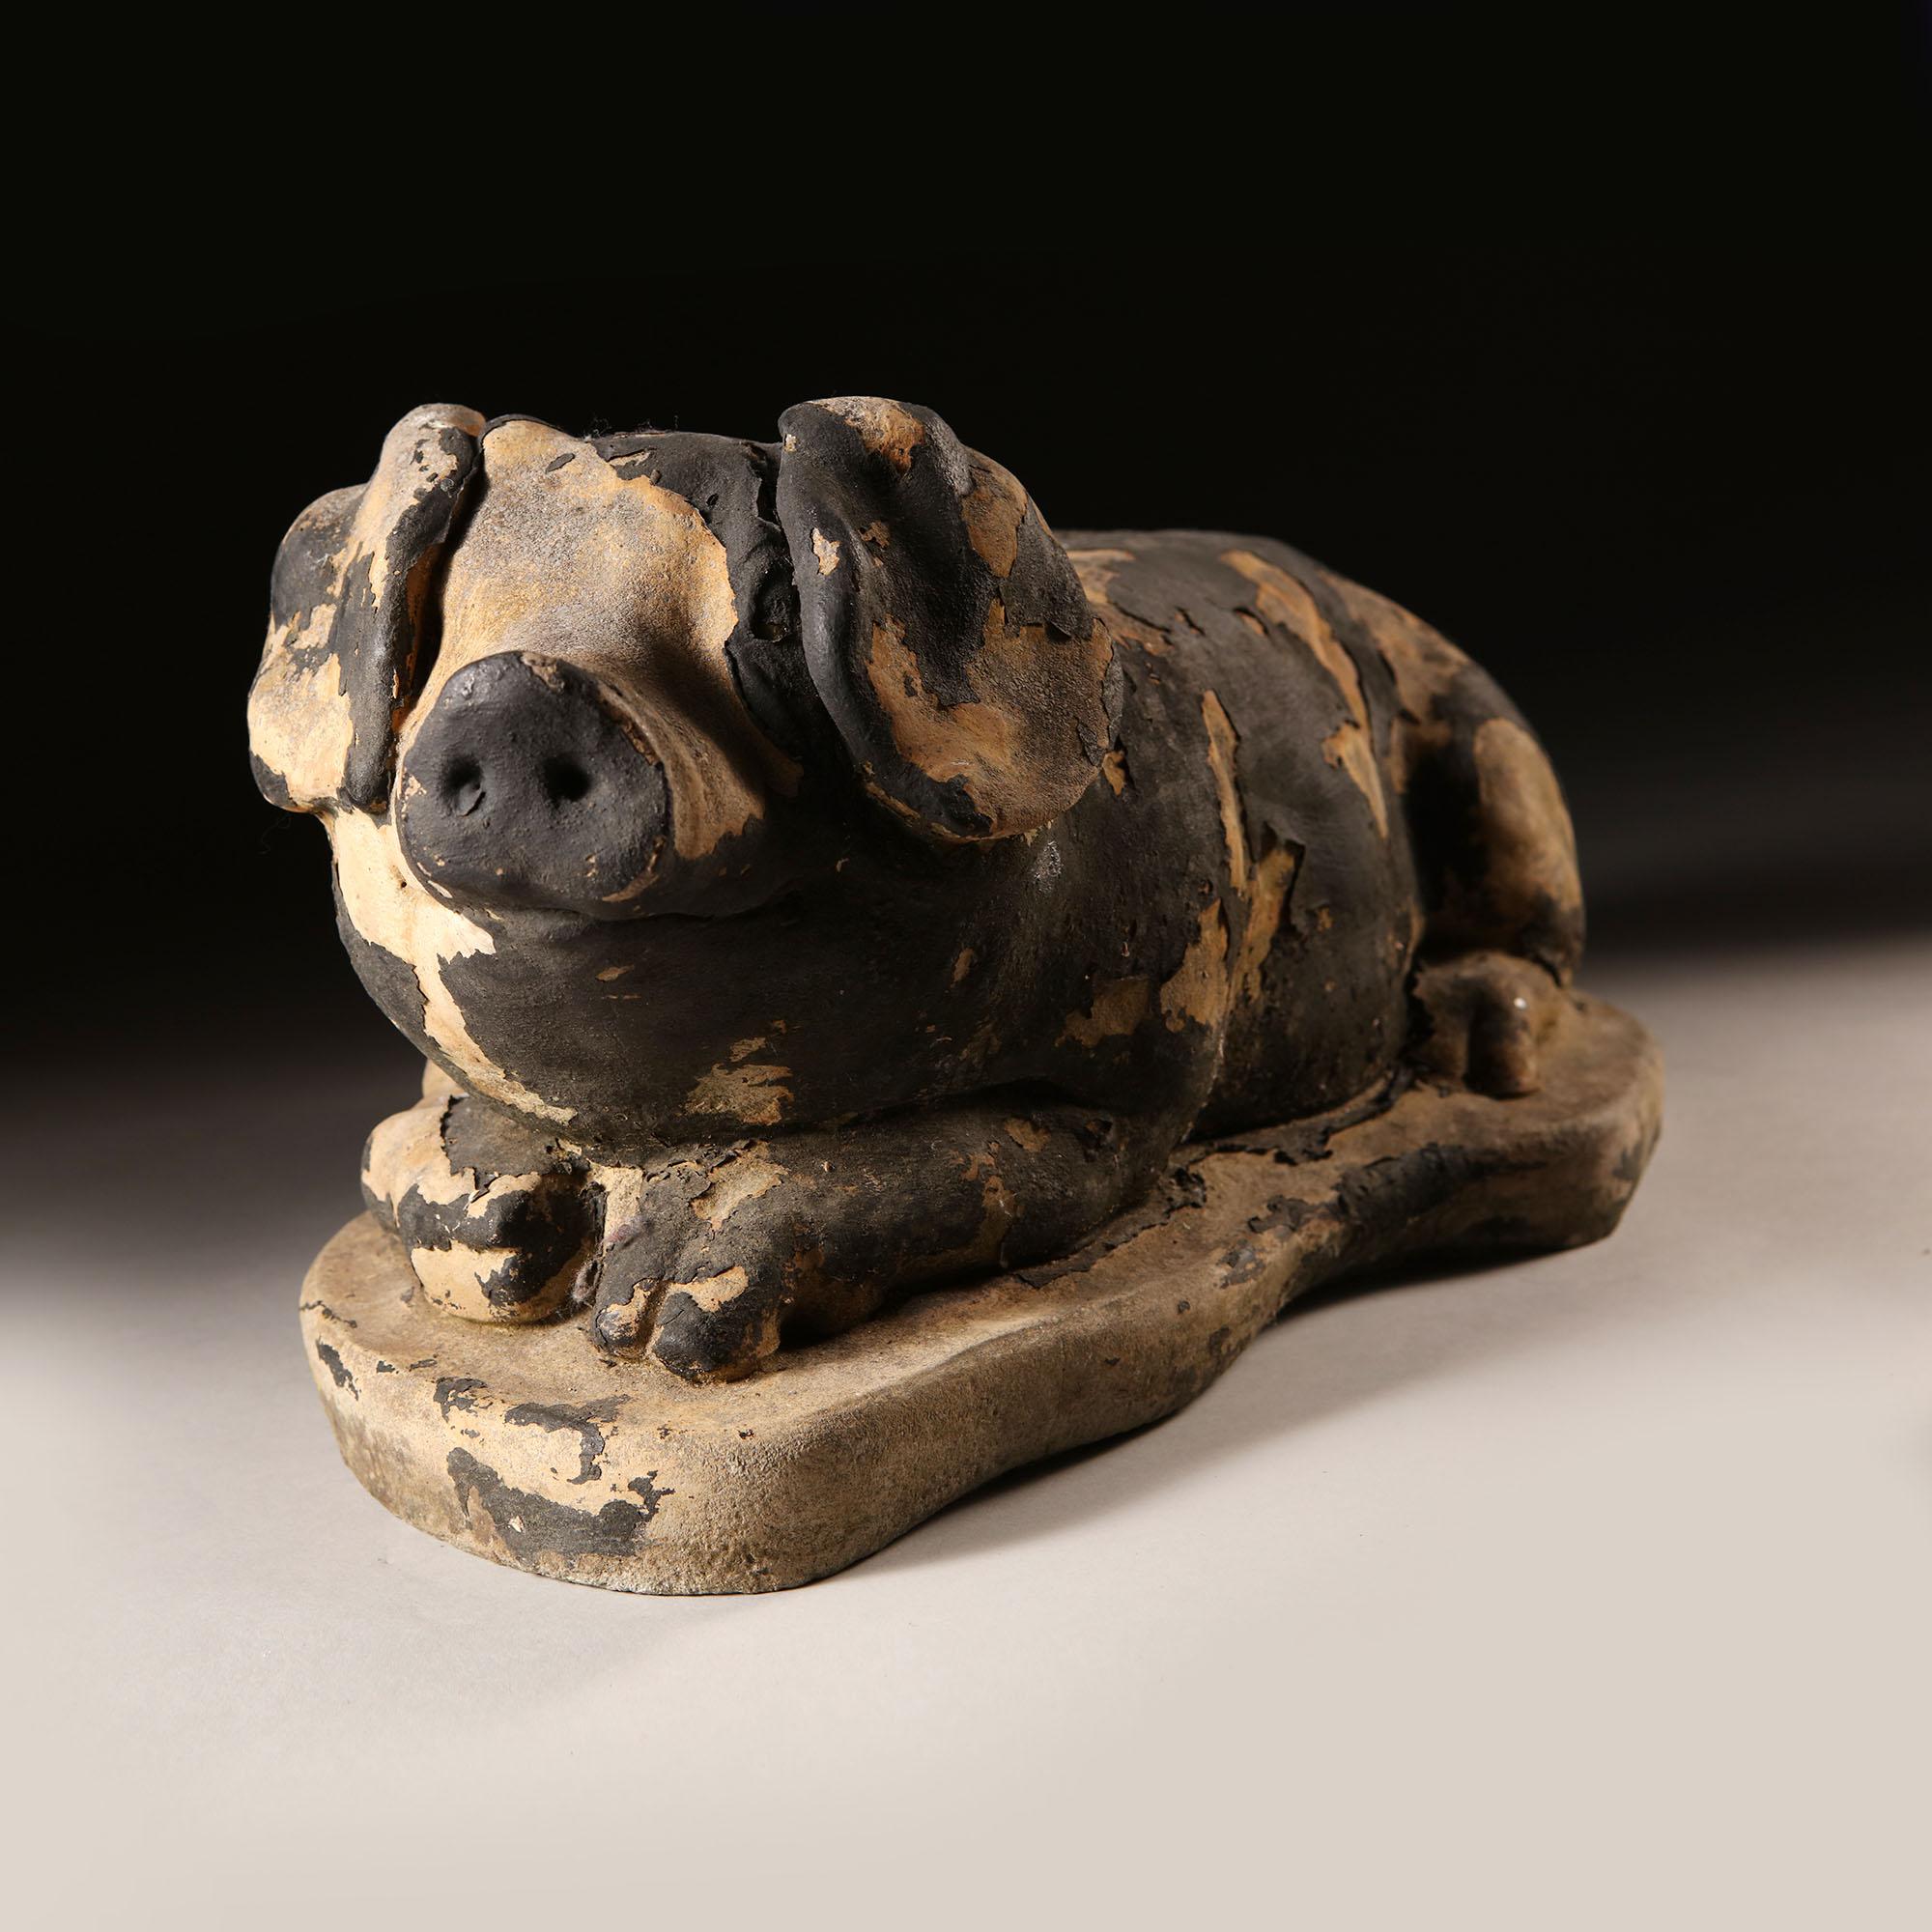 Englische Tierplastik des späten 19. Jahrhunderts, Steinmodell eines lächelnden, liegenden Schweins mit großen Ohren, mit Resten von schwarzer Farbe.